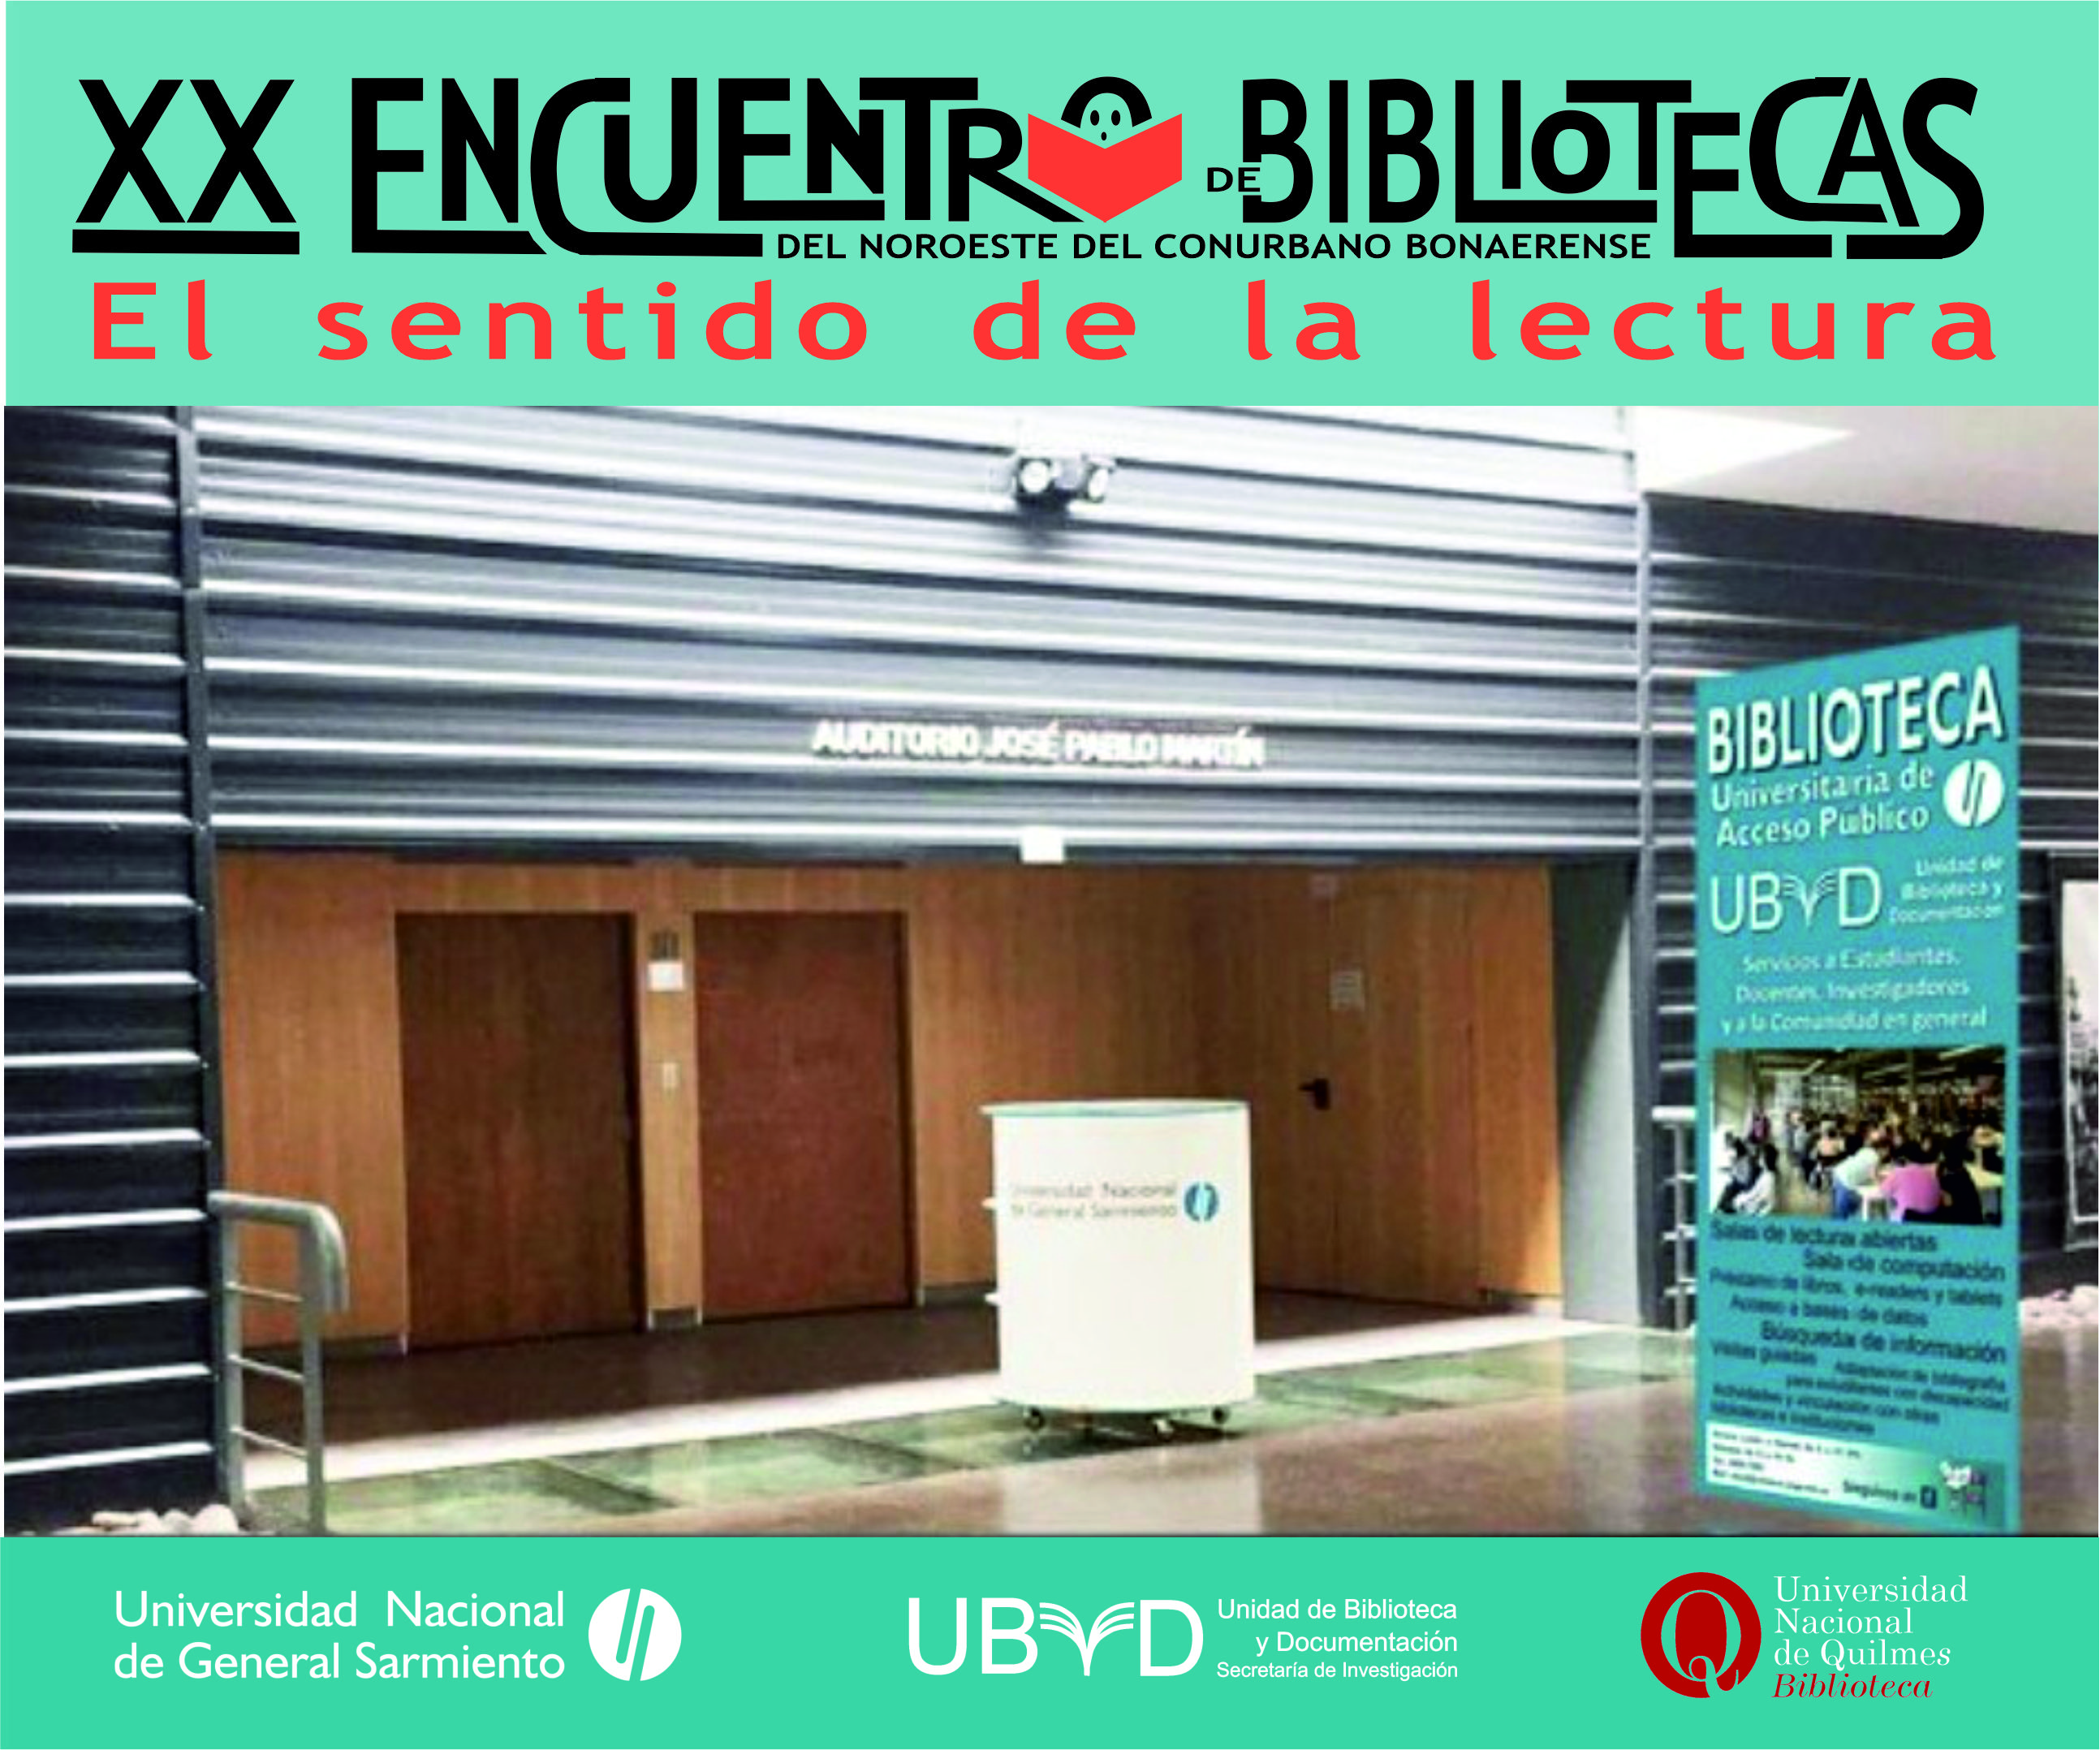 XX Encuentro de Bibliotecas del Noroeste del Conurbano Bonaerense